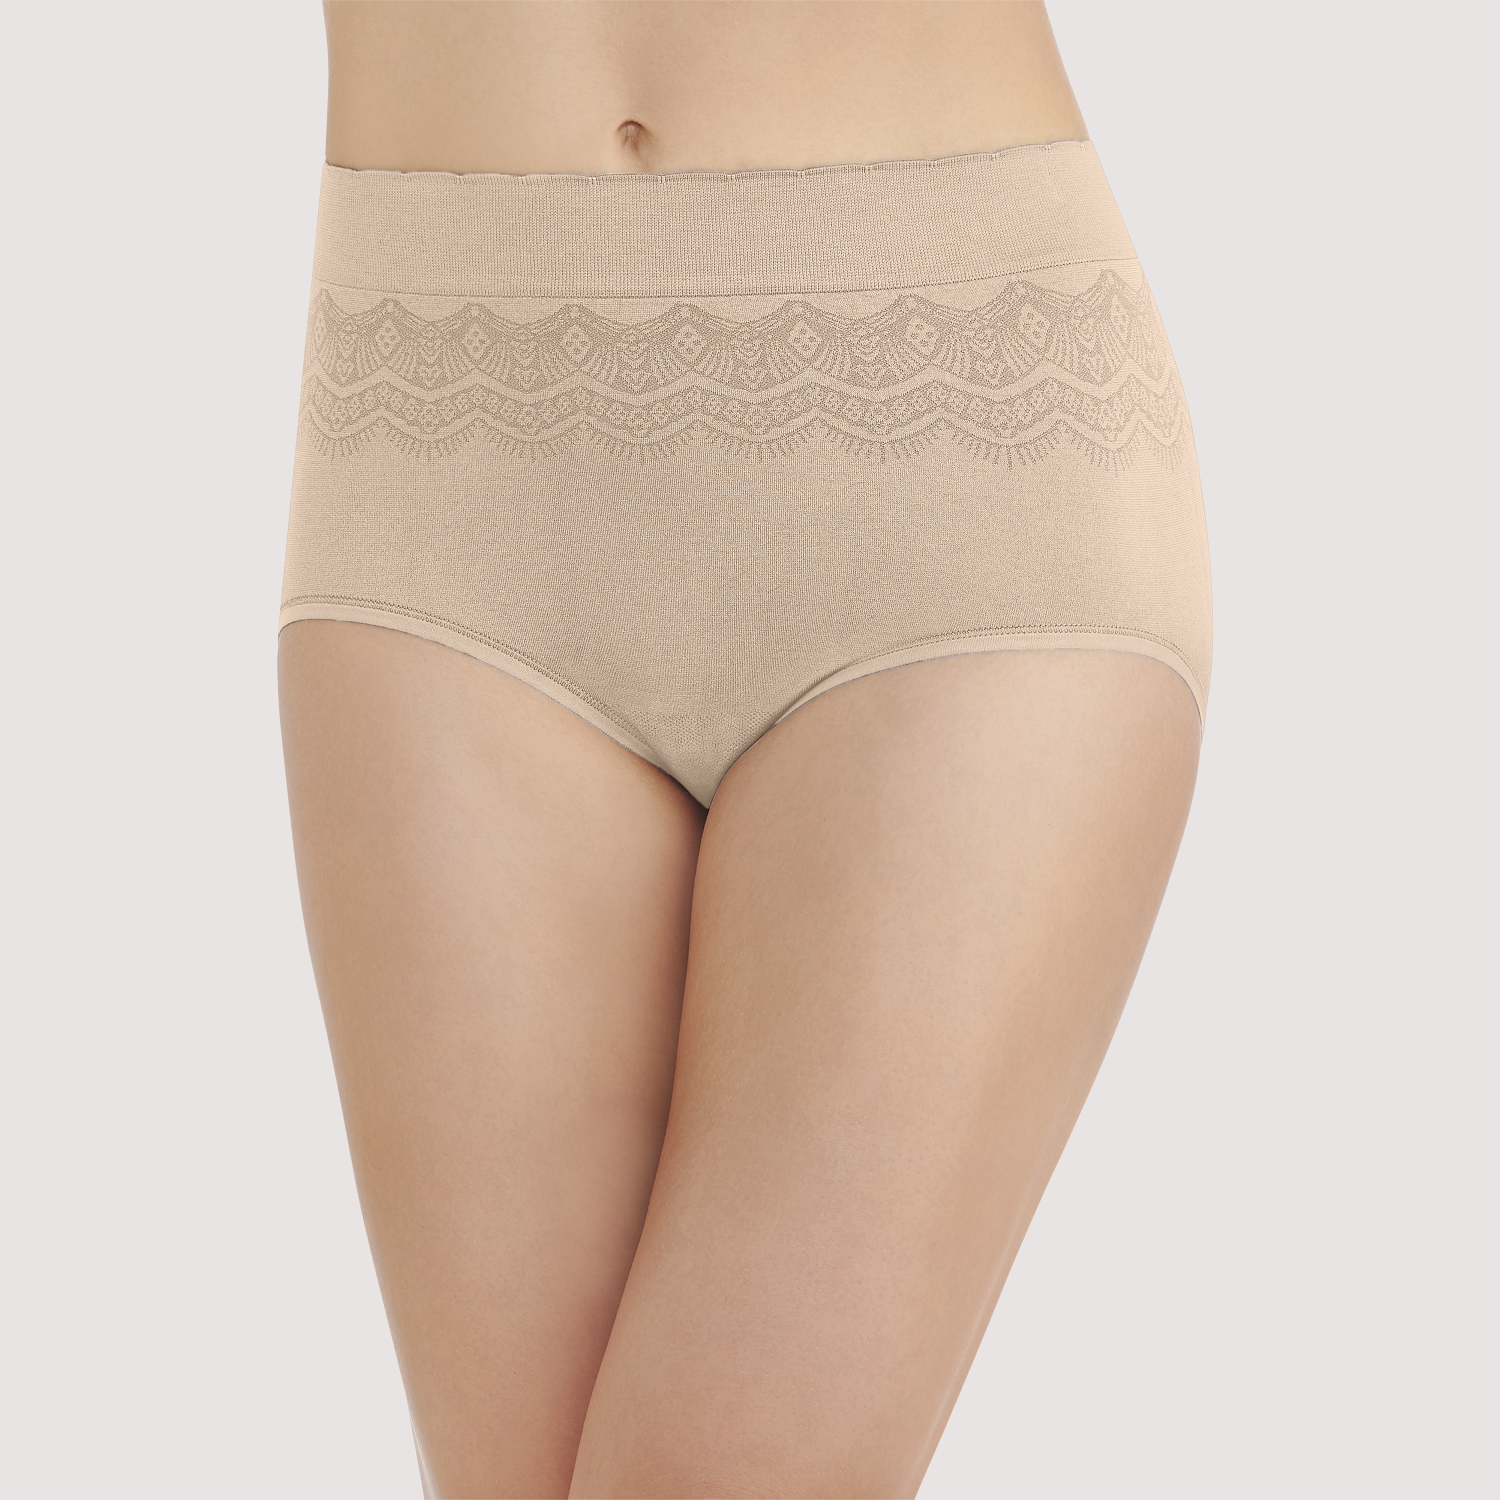 Mua ROSYCORAL Womens Seamless Underwear Adjustable Undies No Show